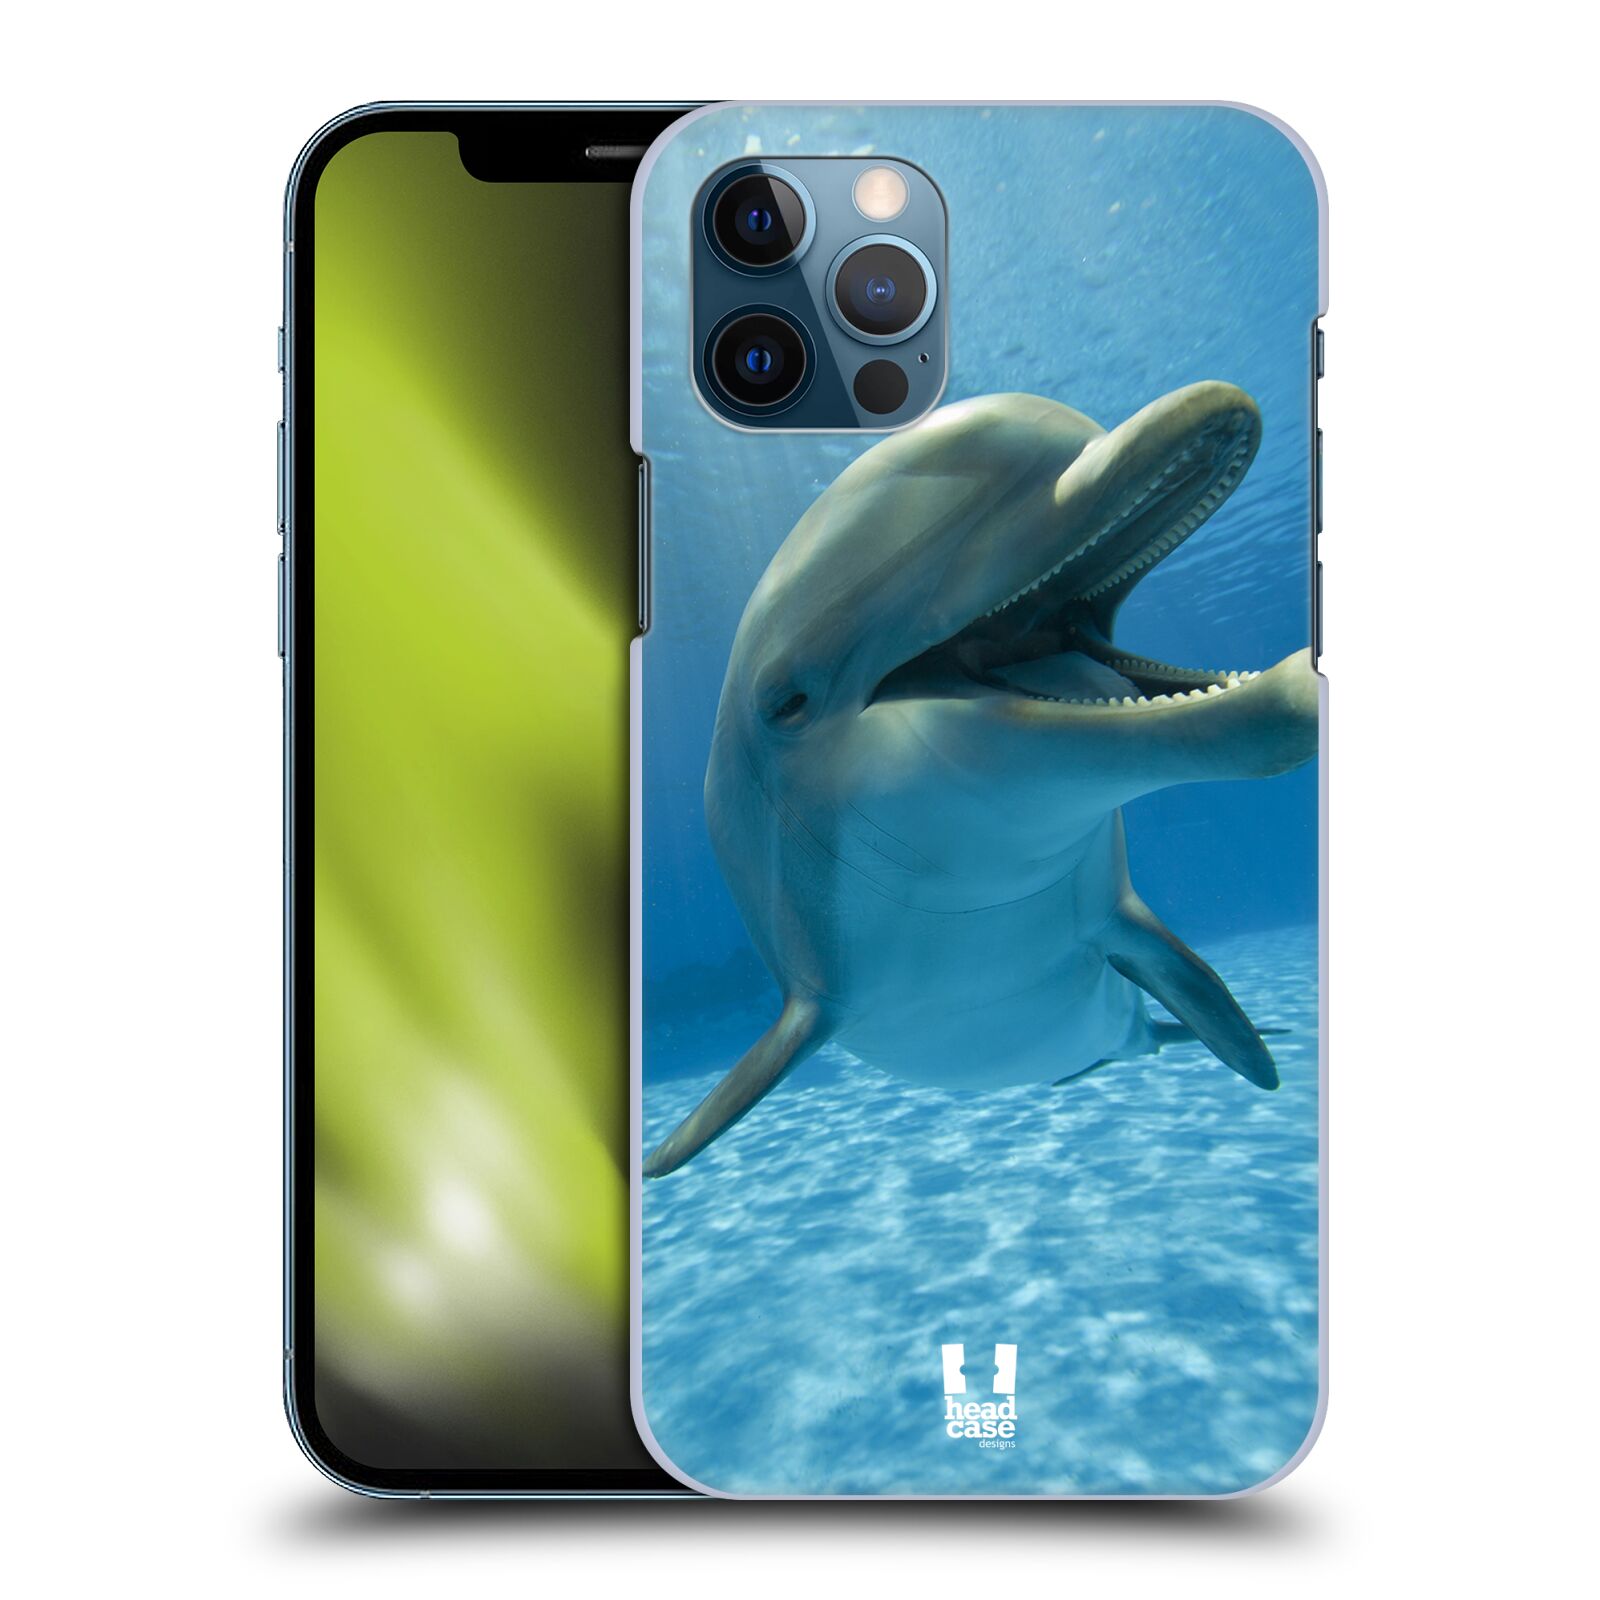 Zadní obal pro mobil Apple iPhone 12 / iPhone 12 Pro - HEAD CASE - Svět zvířat delfín v moři